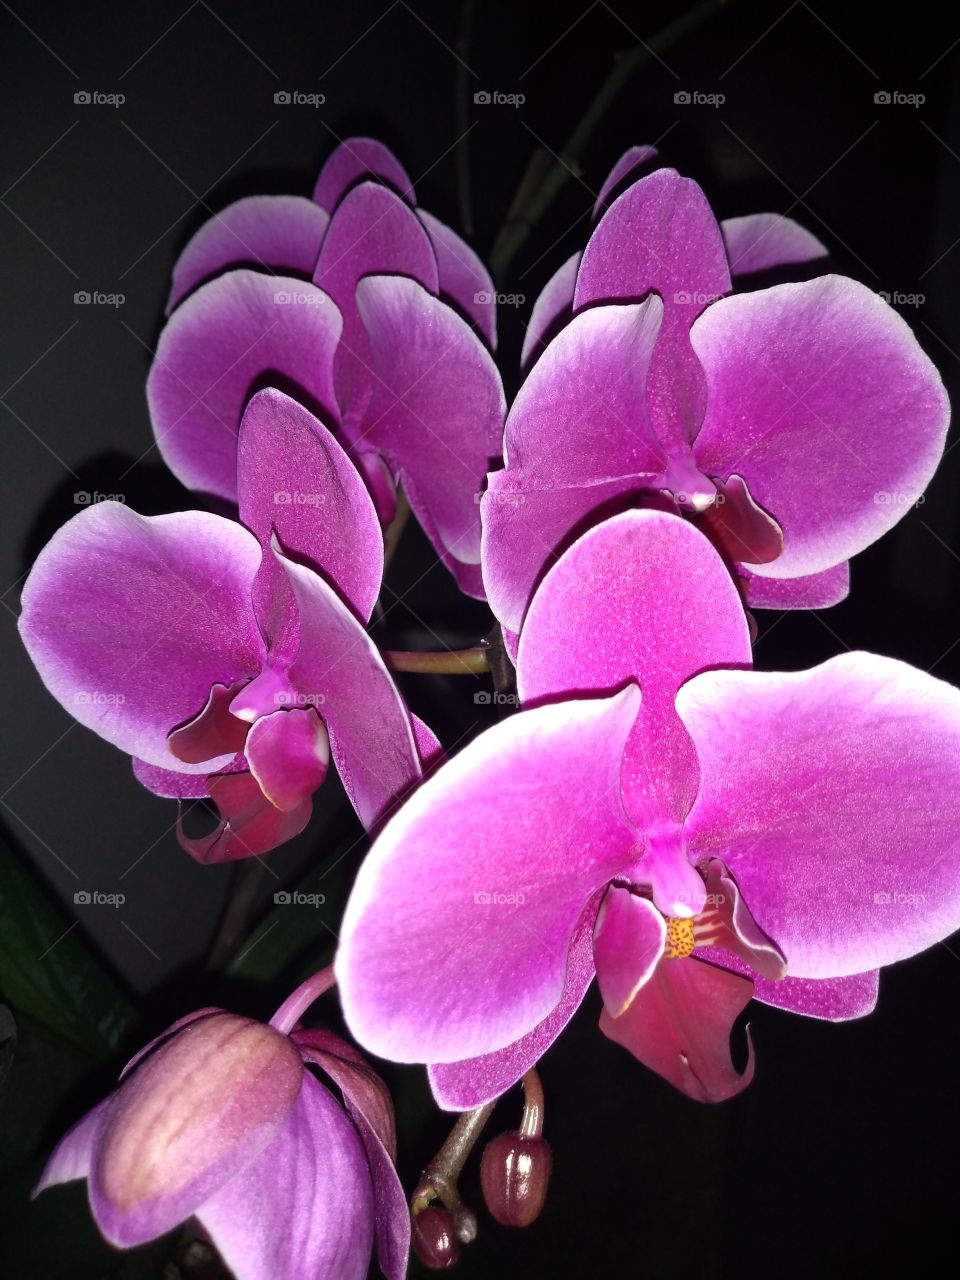 las hermosas flores de nombre orquídeas que nos regala la madre naturaleza a nosotros los humanos para que lo disfrutemos.